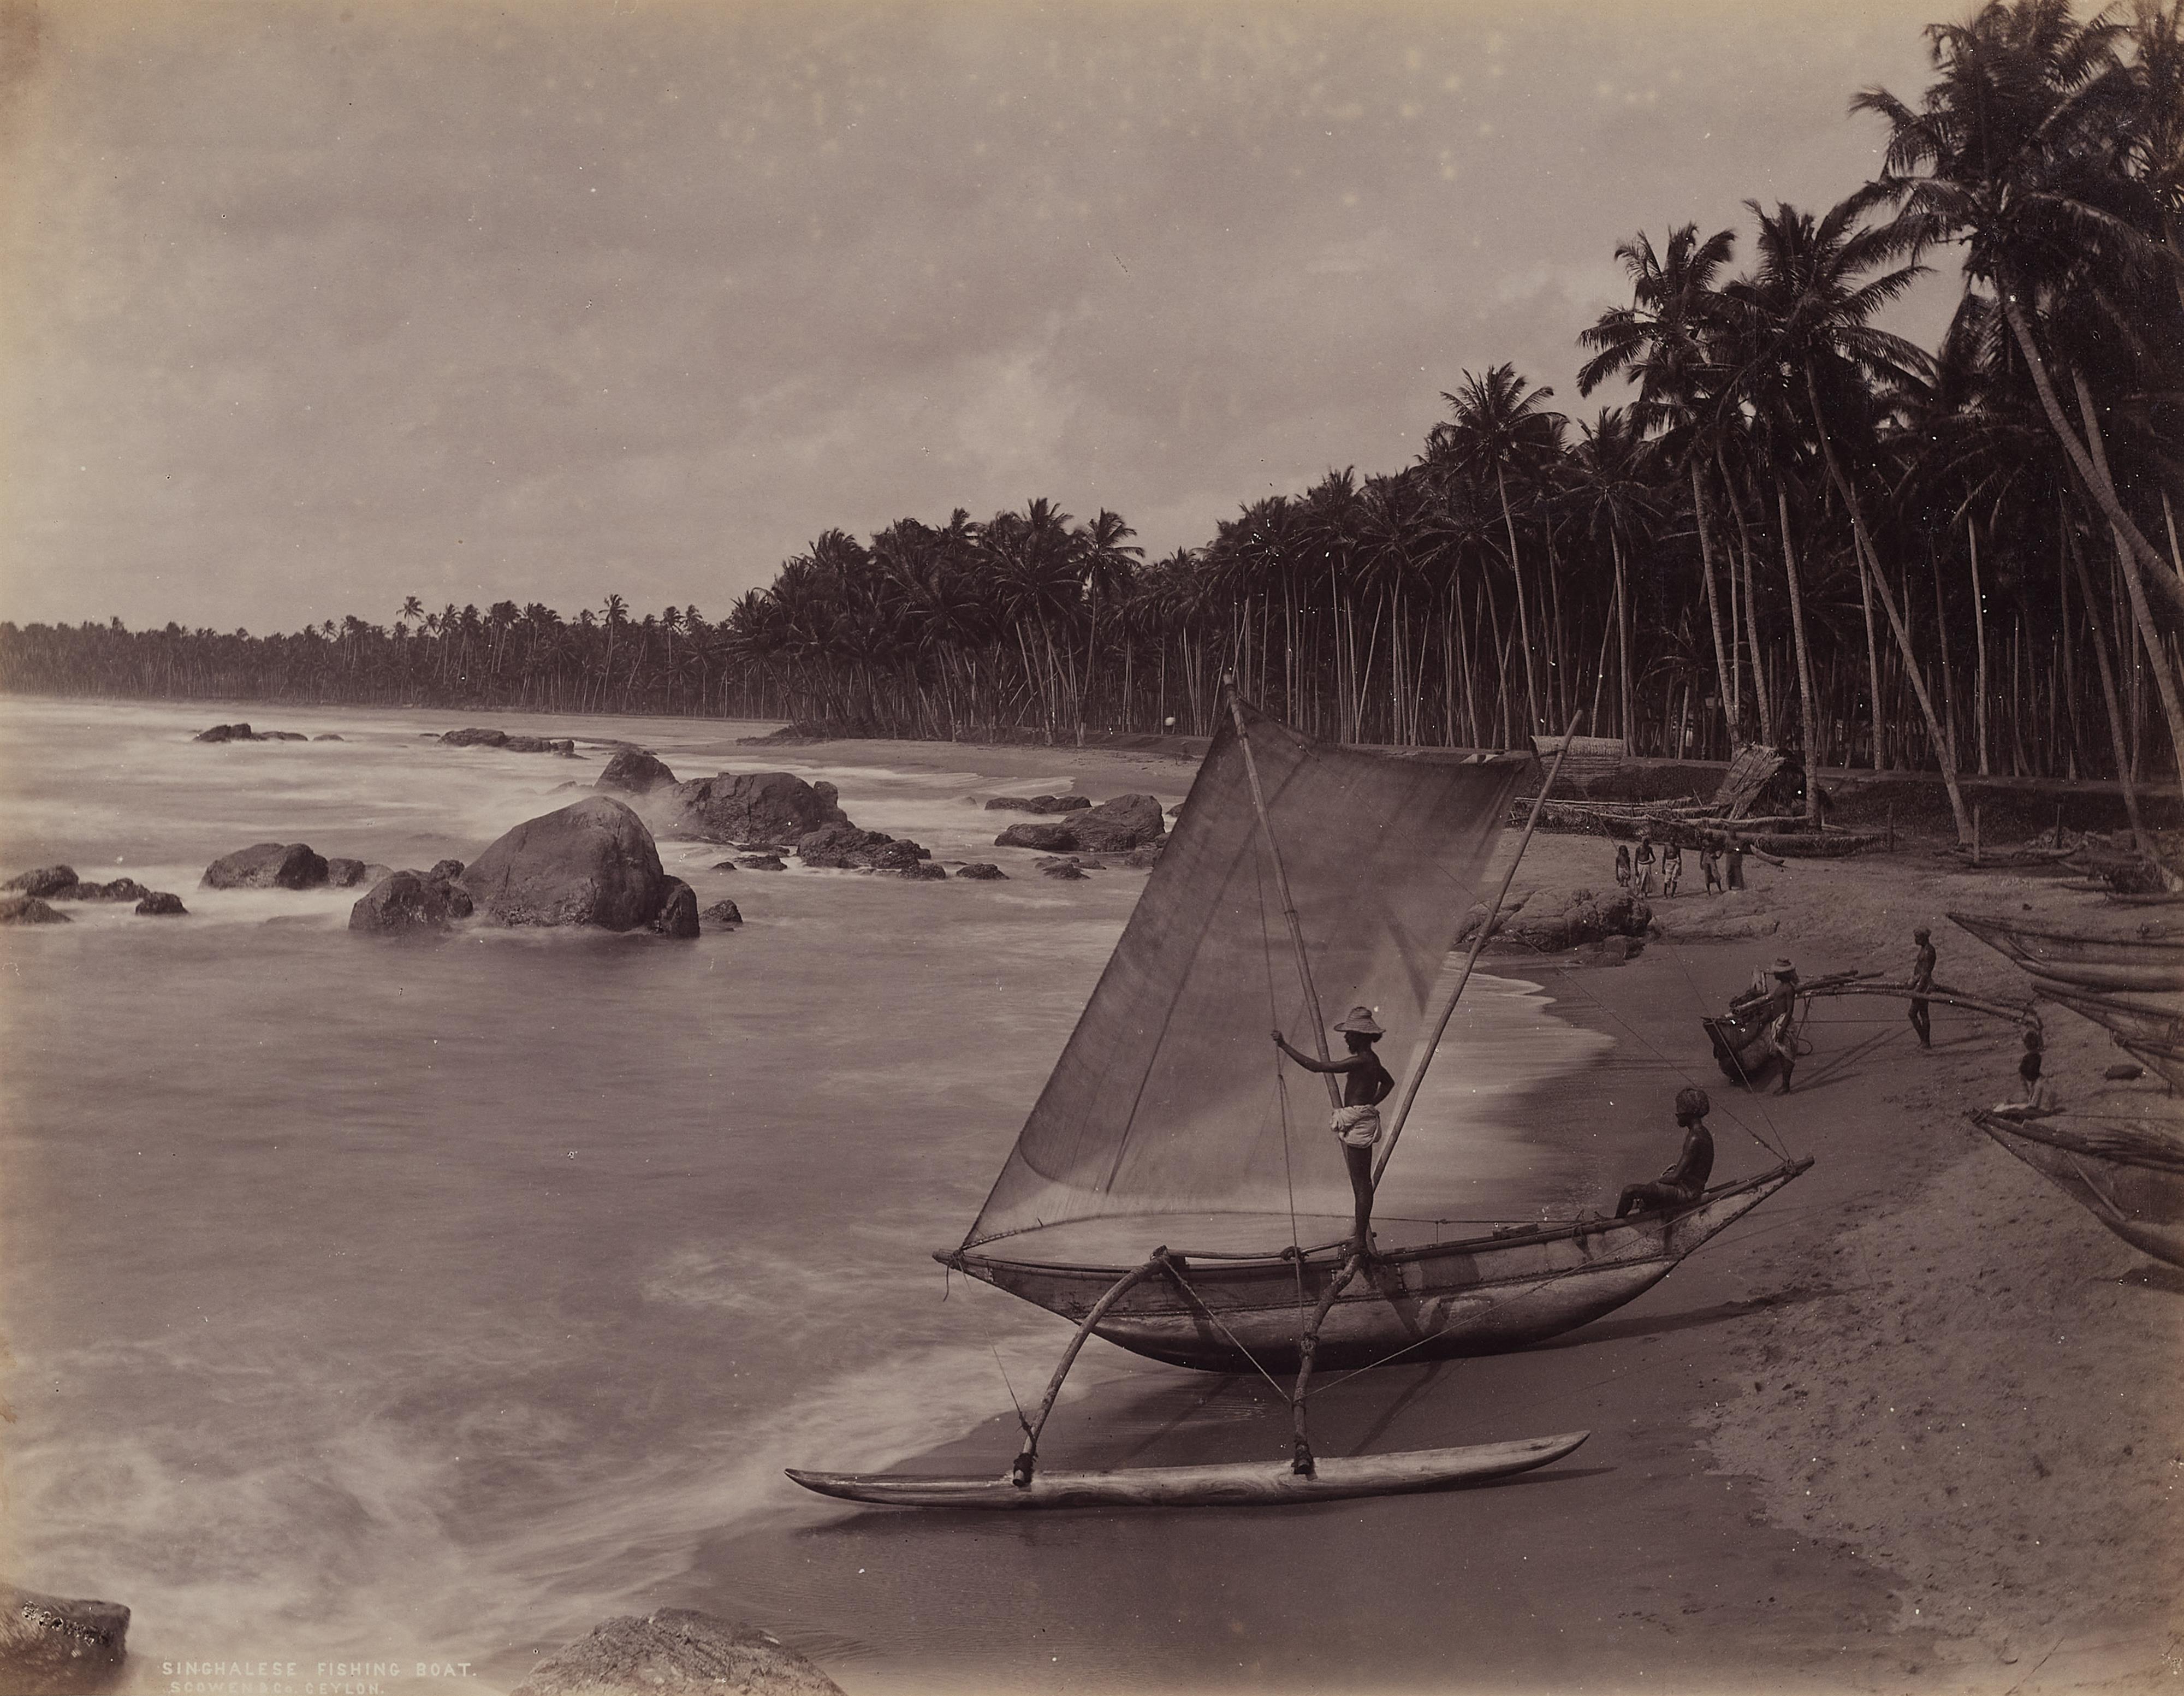 Scowen & Co. - Reise-Erinnerungen aus Ceylon - image-6